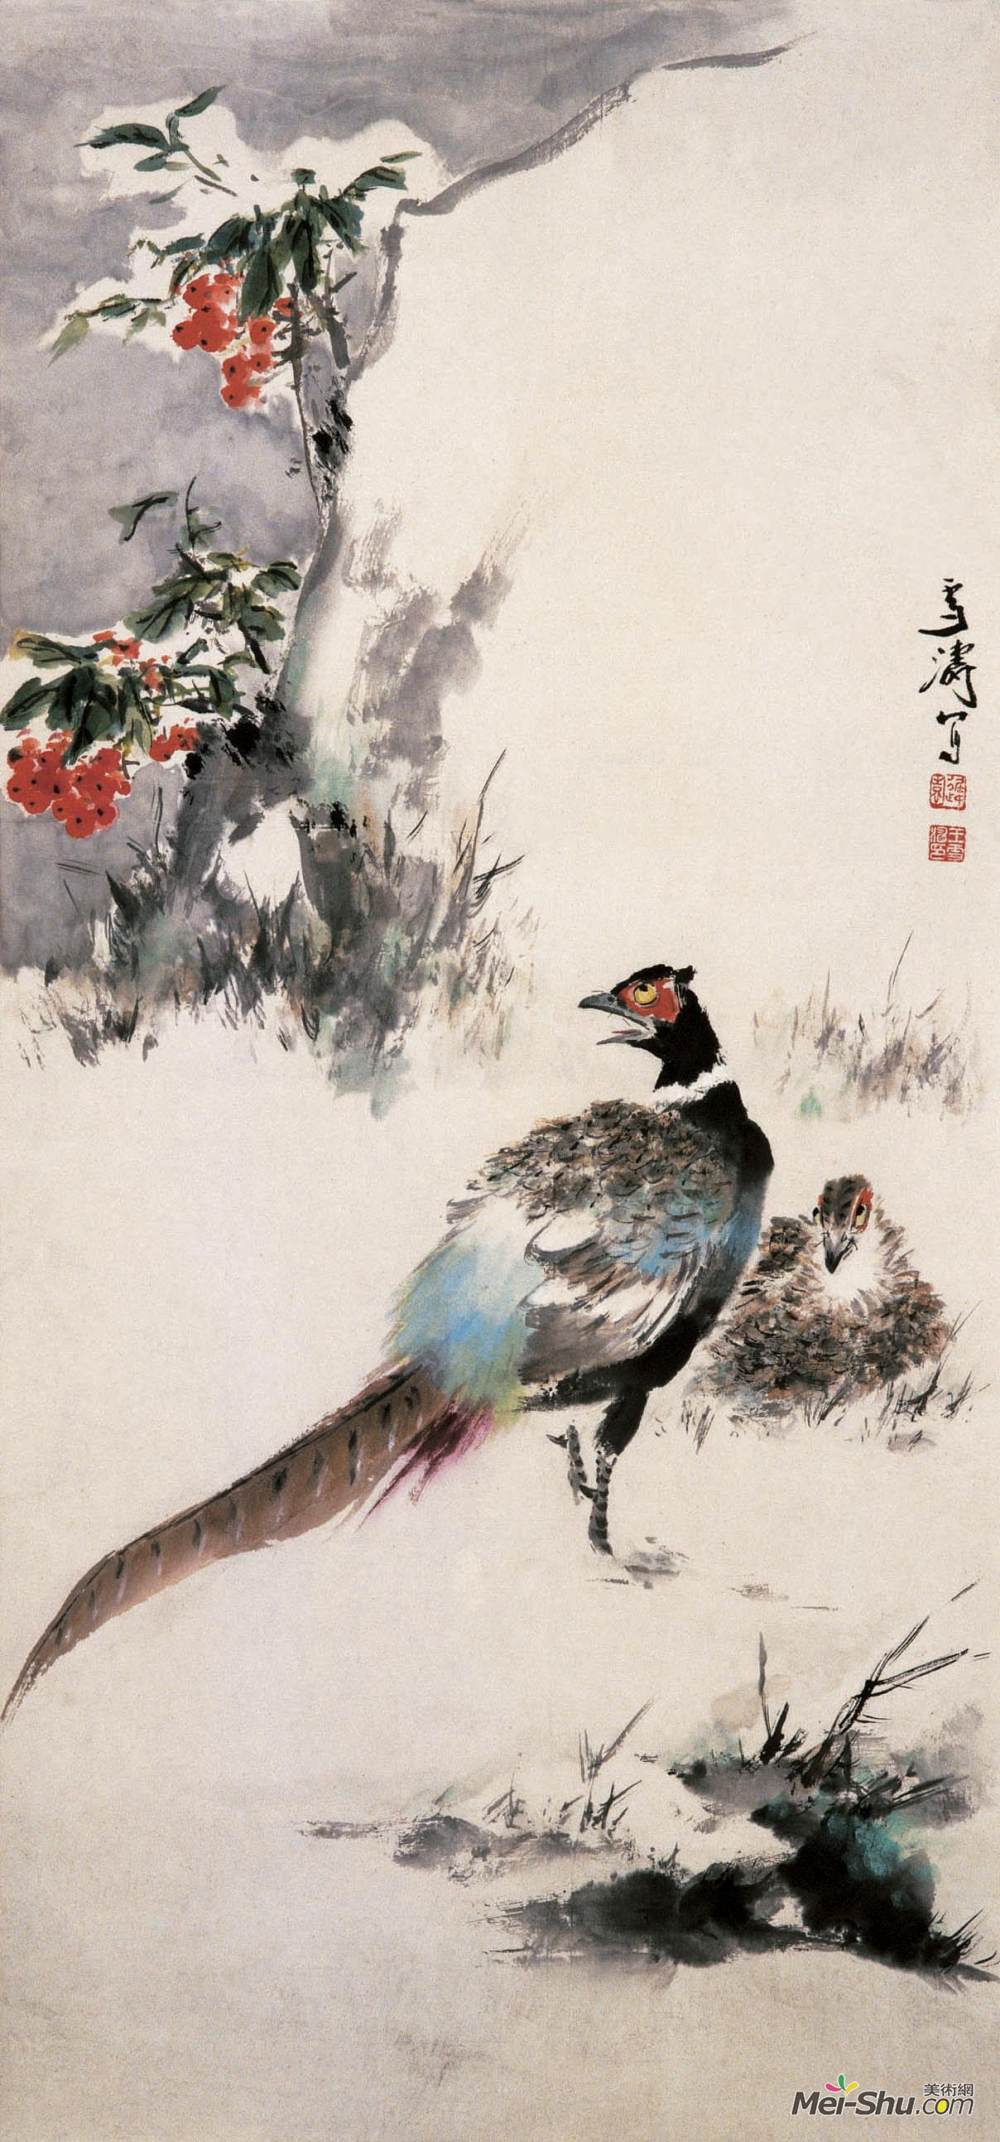 1965规格:100×47cm材质:纸本水墨设色中国画作品简介:王雪涛(1903